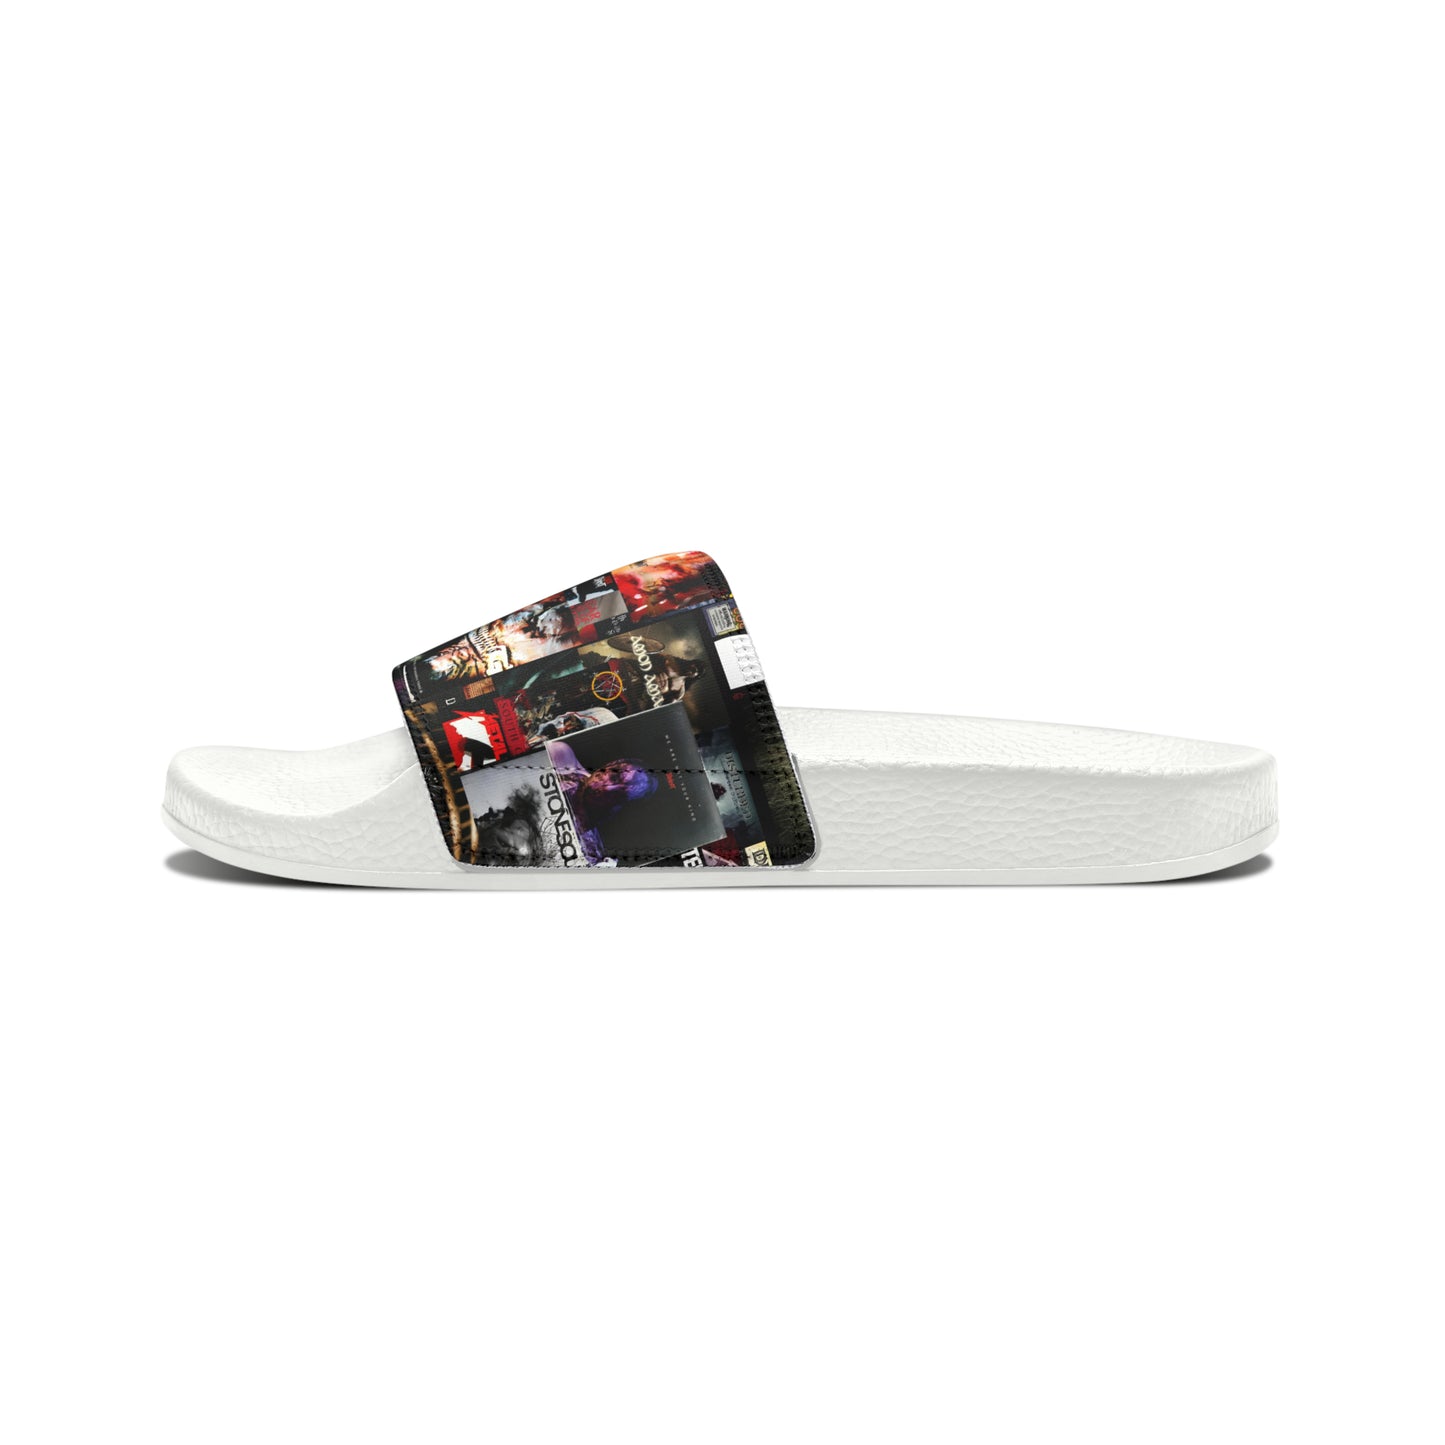 Slipknot Chaotic Album Art Collage Women's Slide Sandals